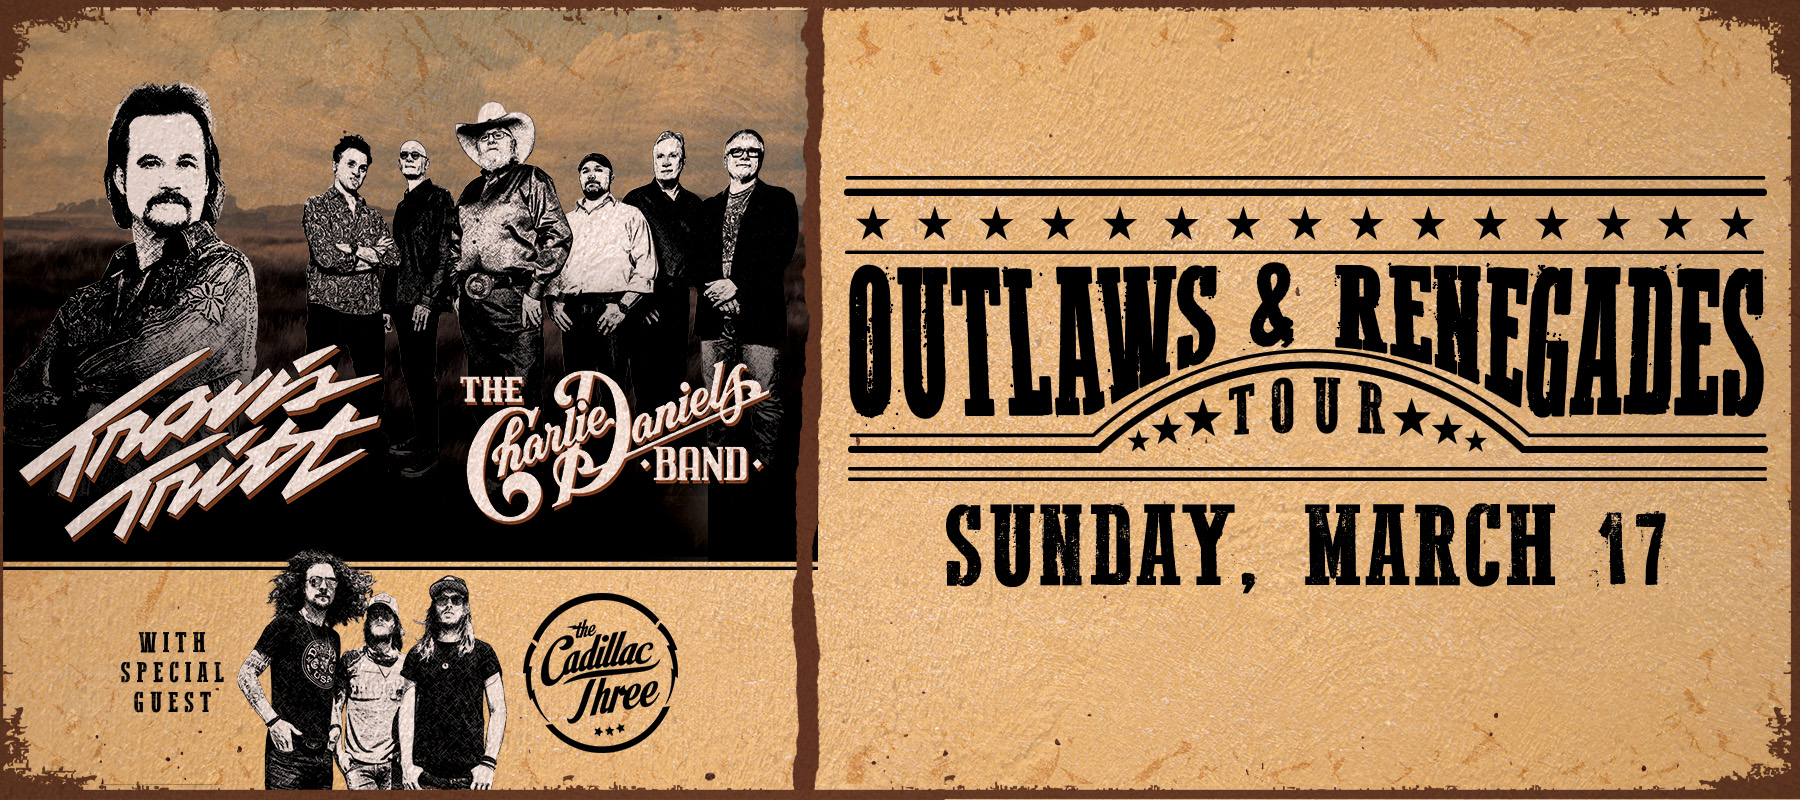 The Outlaws & Renegades Tour Richmond, VA 3-17-2019